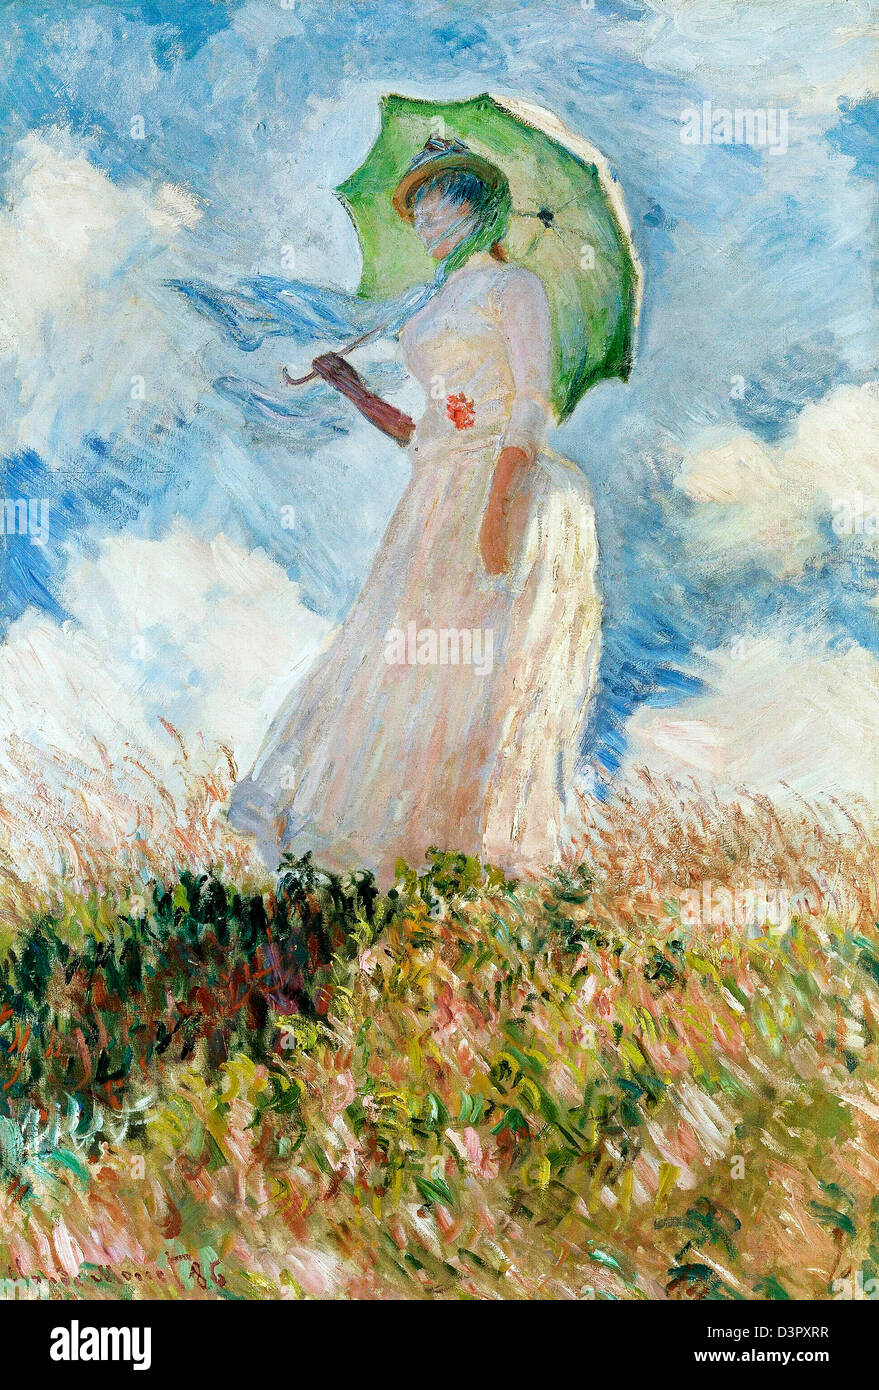 Claude Monet, lo studio di una figura all'aperto: una donna con il parasole,  rivolto verso sinistra, 1886 olio su tela. Musée d'Orsay, Parigi, Francia  Foto stock - Alamy